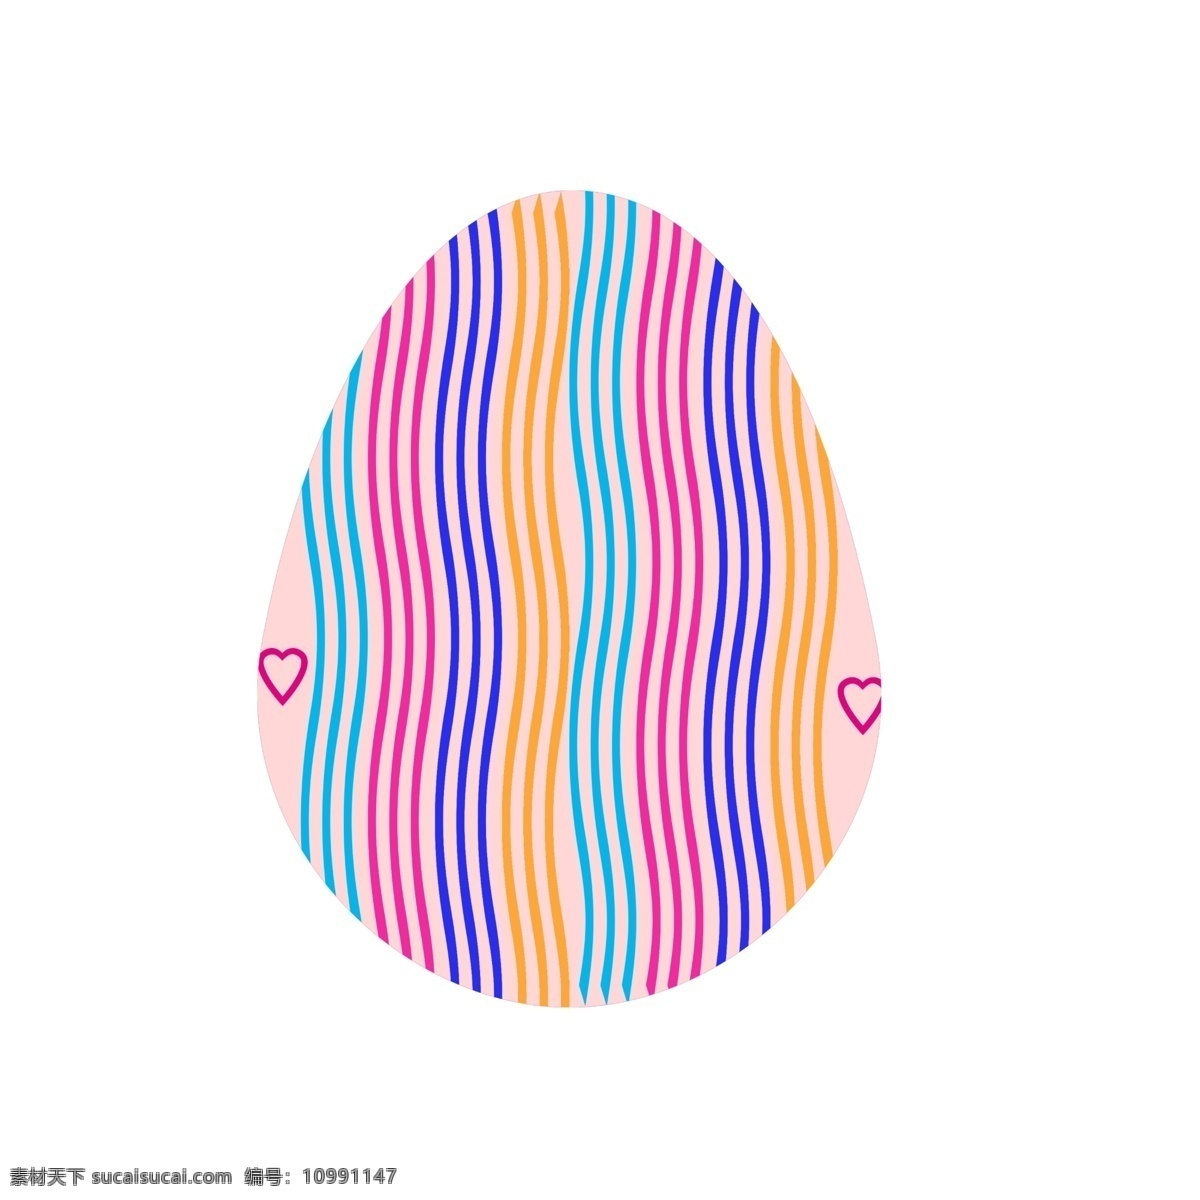 漂亮 复活节 彩蛋 漂亮的彩蛋 复活节彩蛋 彩插图 红色 蓝色 黄色 红心 一个彩蛋